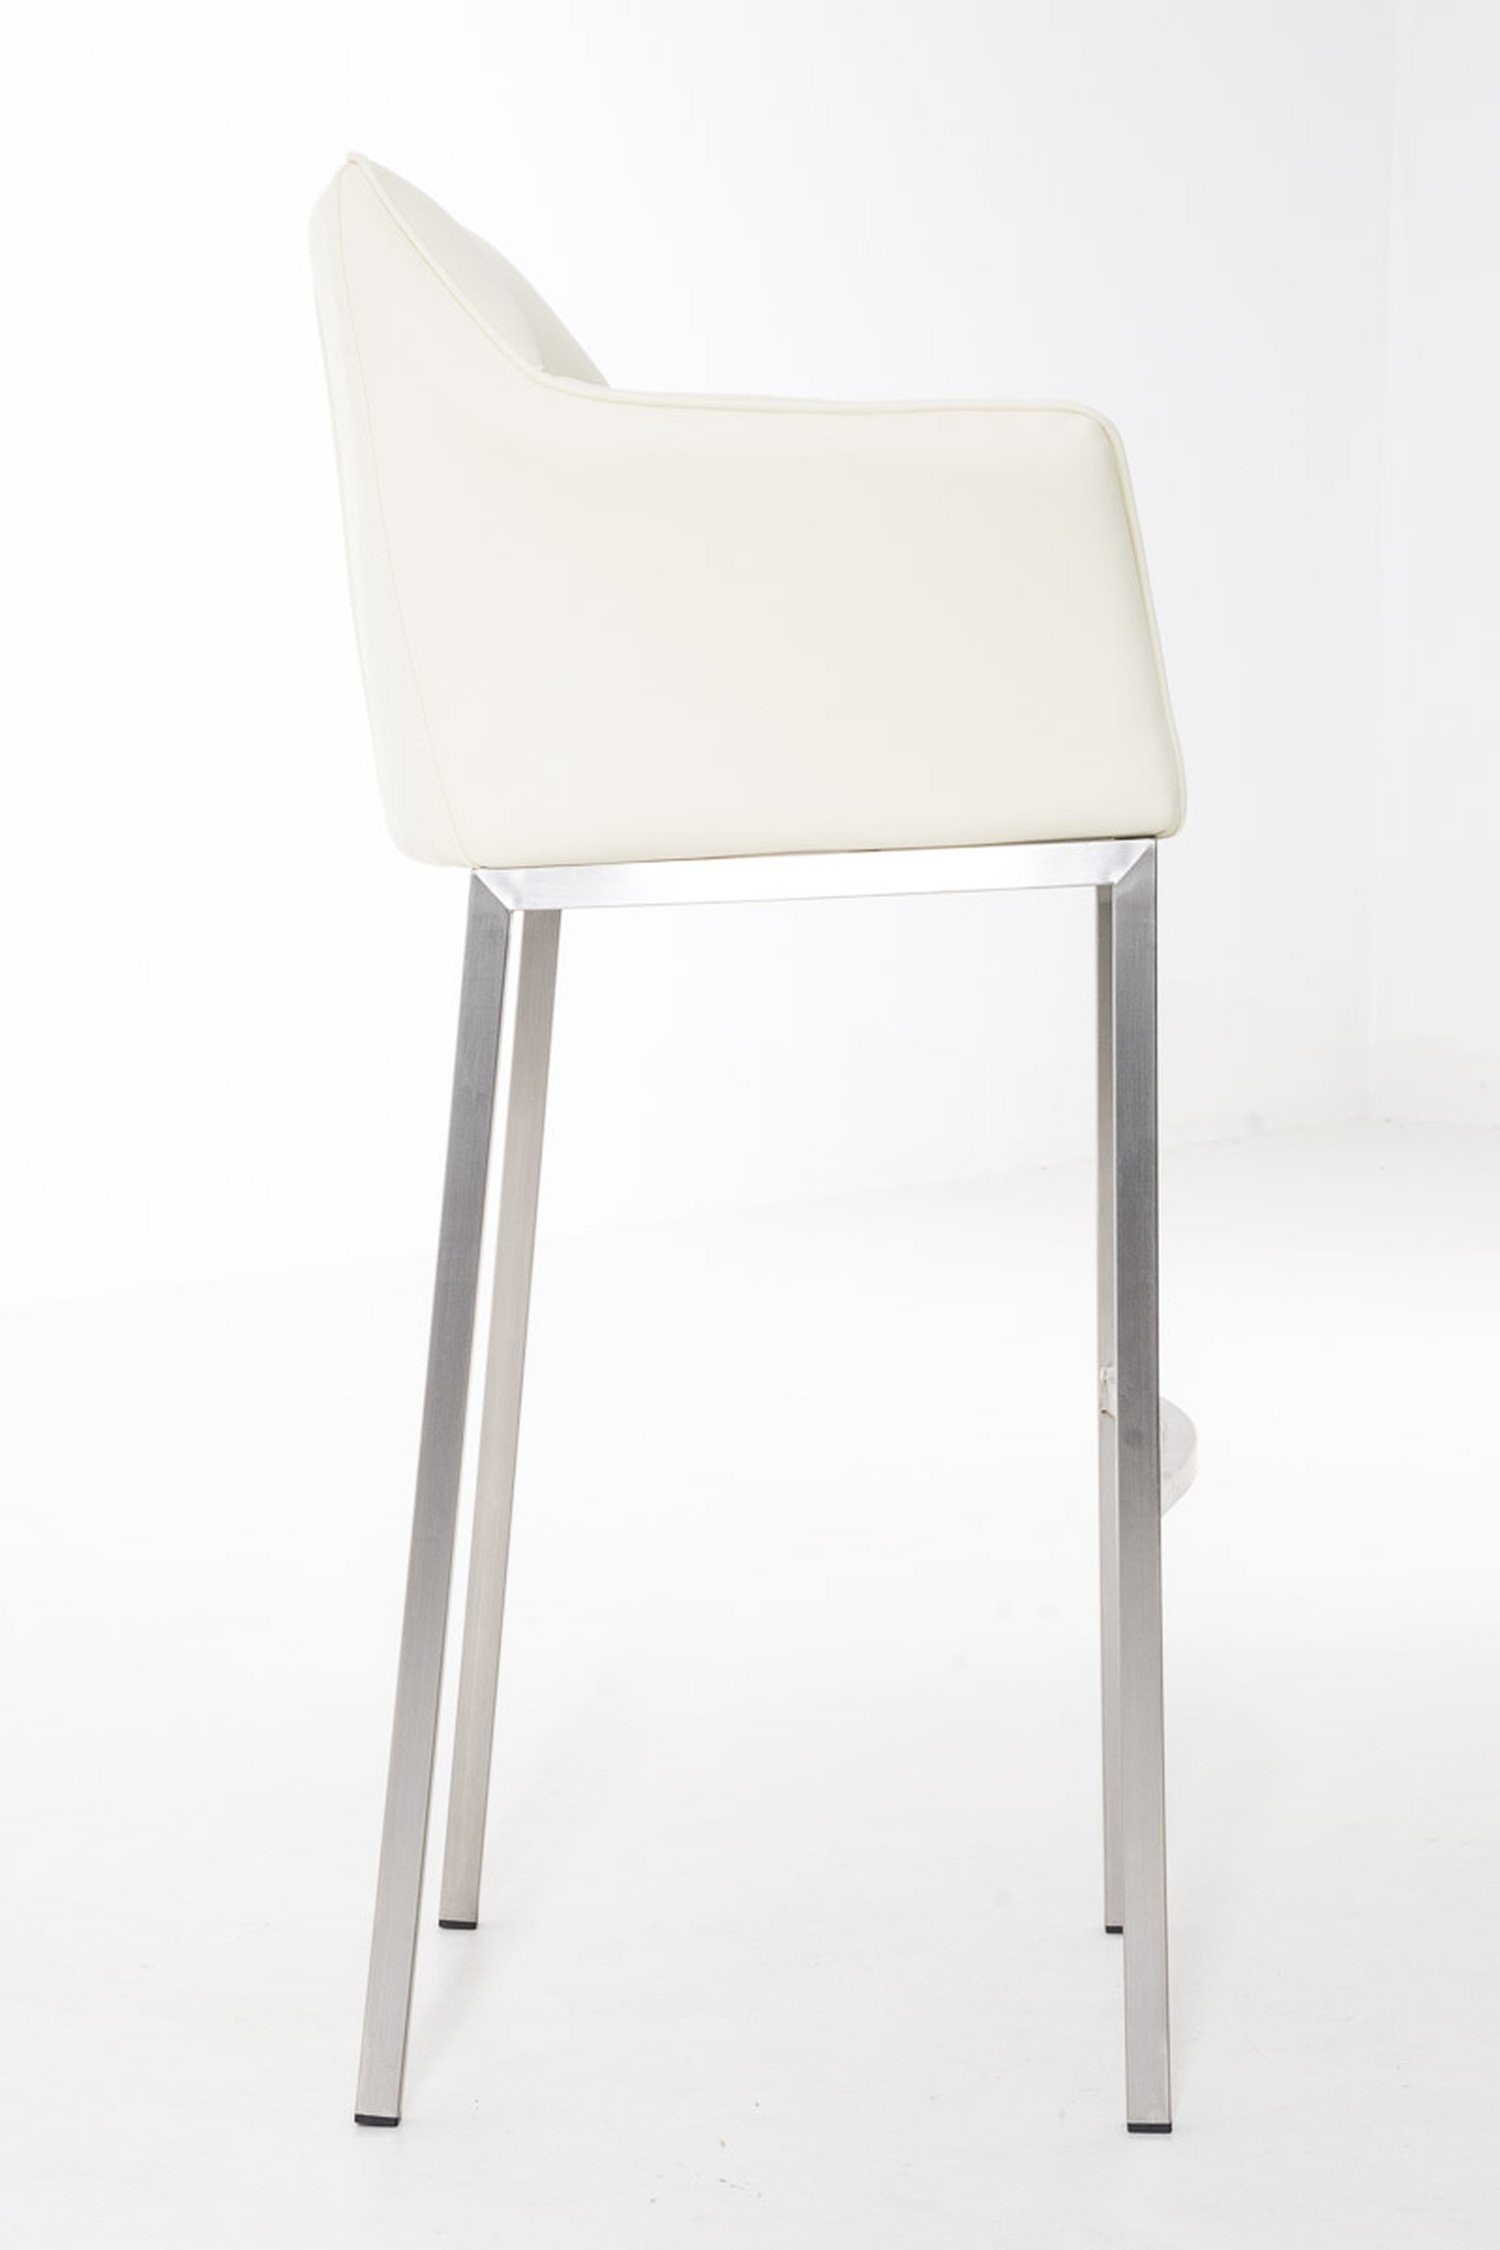 Sitzfläche: TPFLiving Gestell & Fußstütze für Hocker (mit - Creme Damaso Edelstahl Rückenlehne Küche), Kunstleder - 4-Fuß und Theke Barhocker